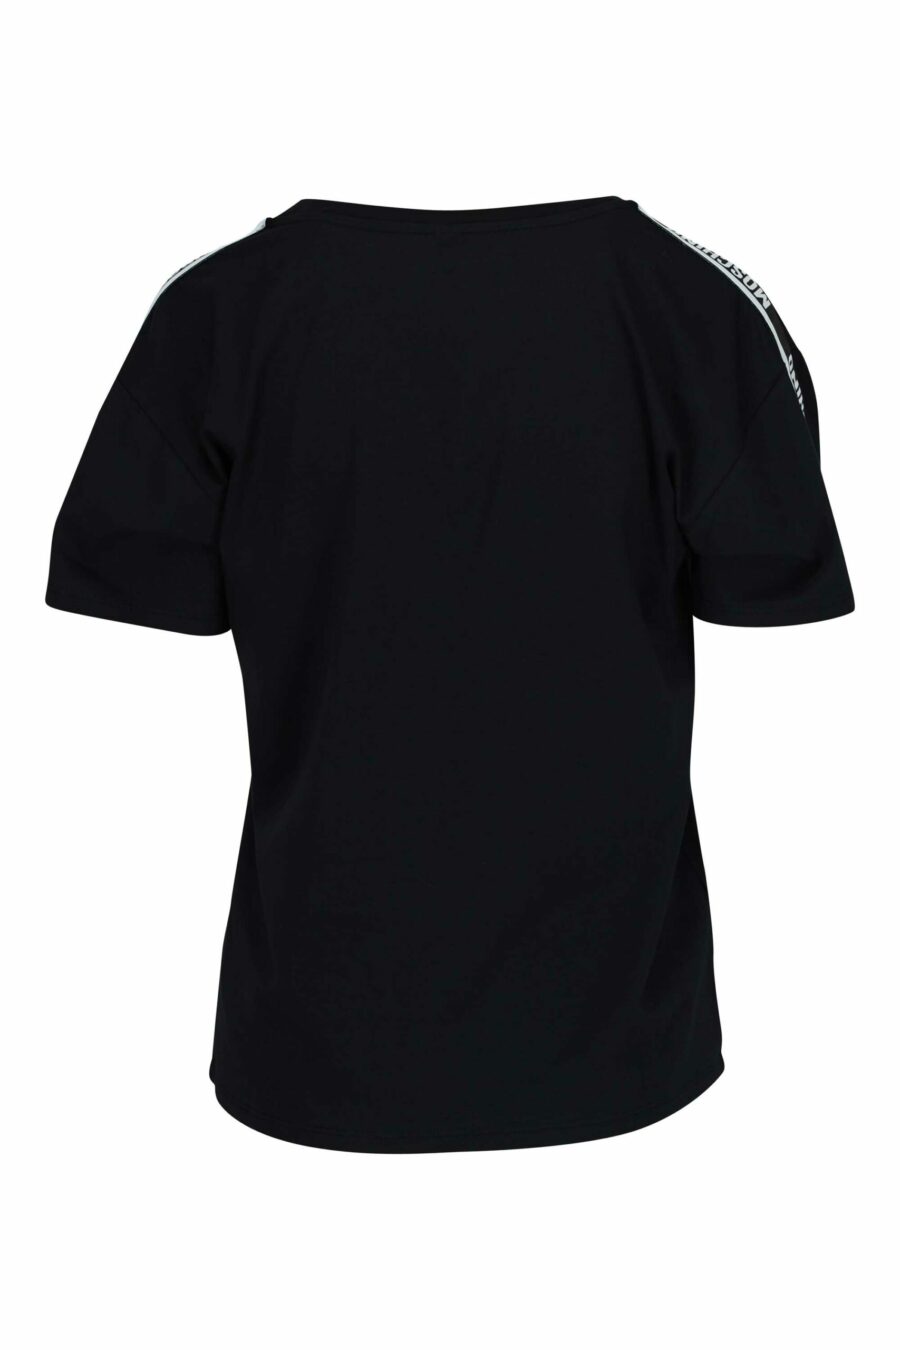 Camiseta negra con logo en cinta hombros blanco - 667113695549 1 scaled